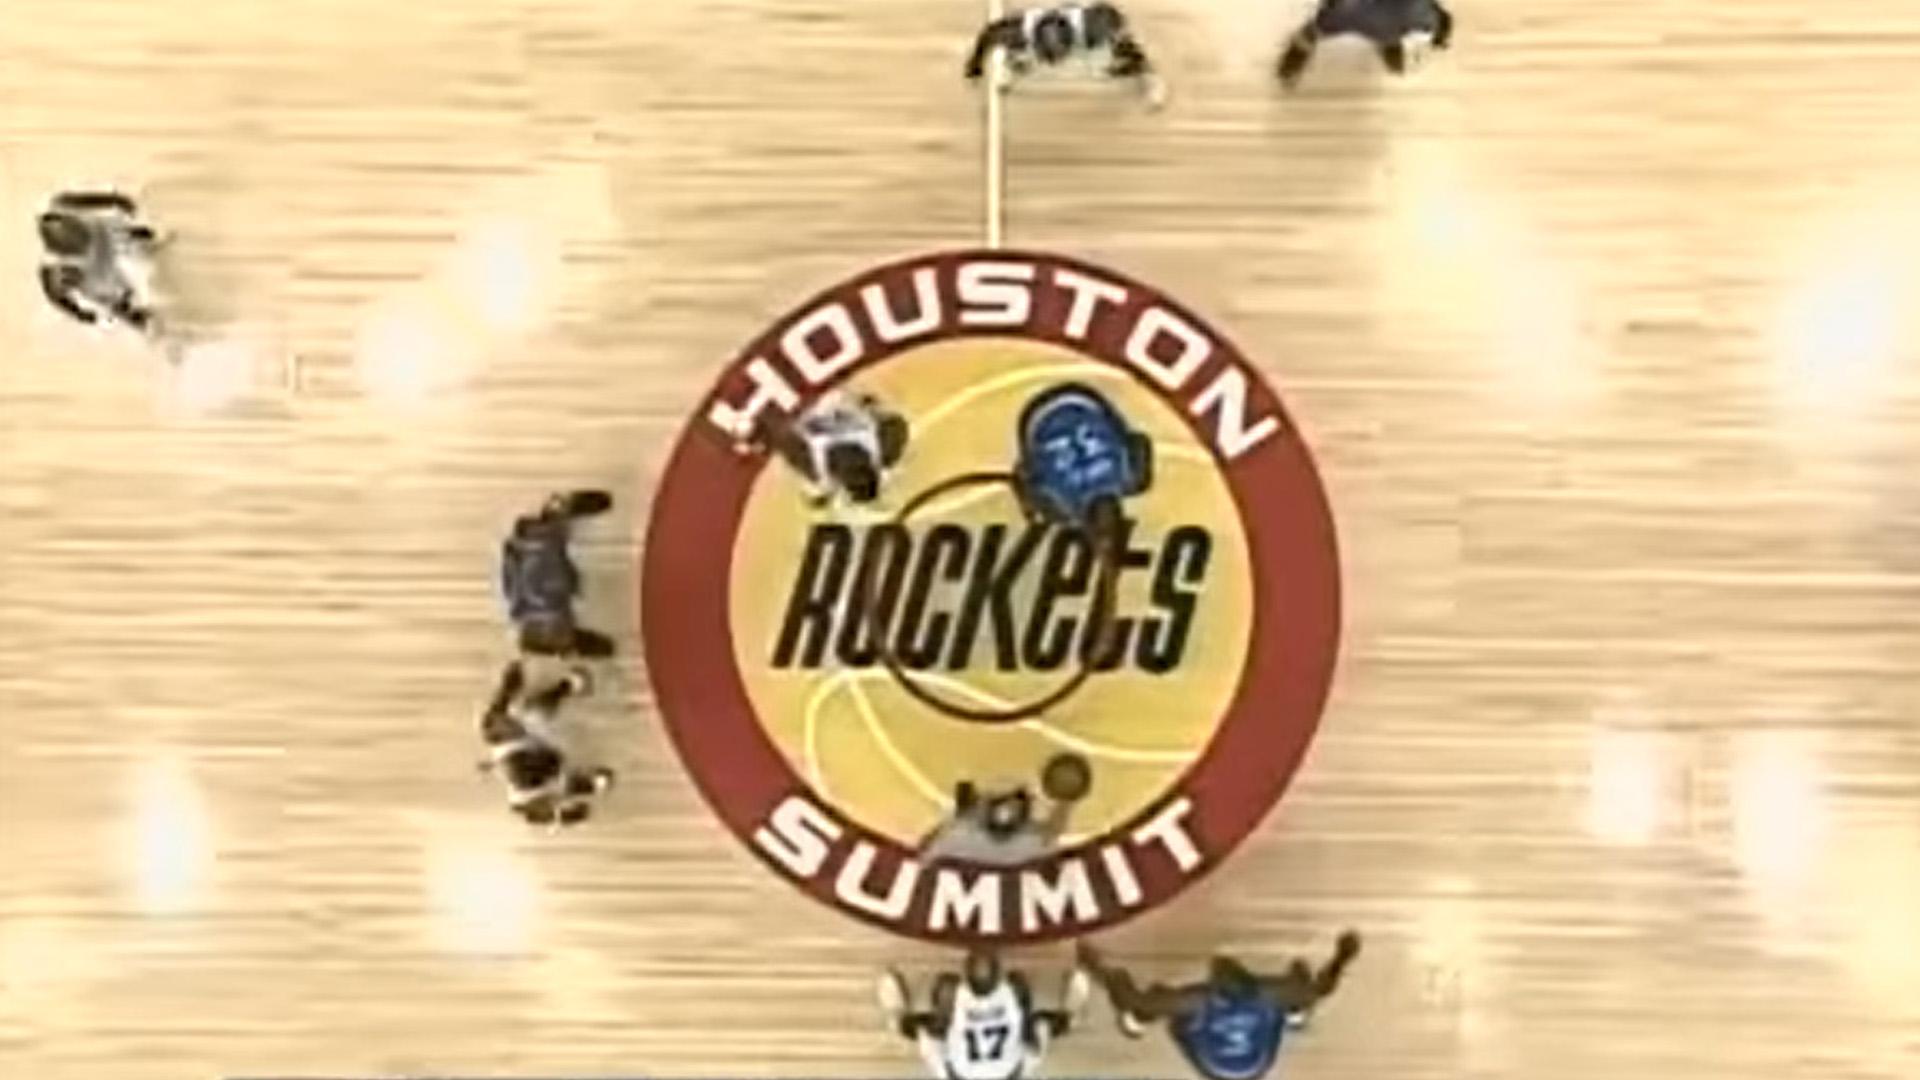 The Summit Houston Rockets 1 juillet 2020